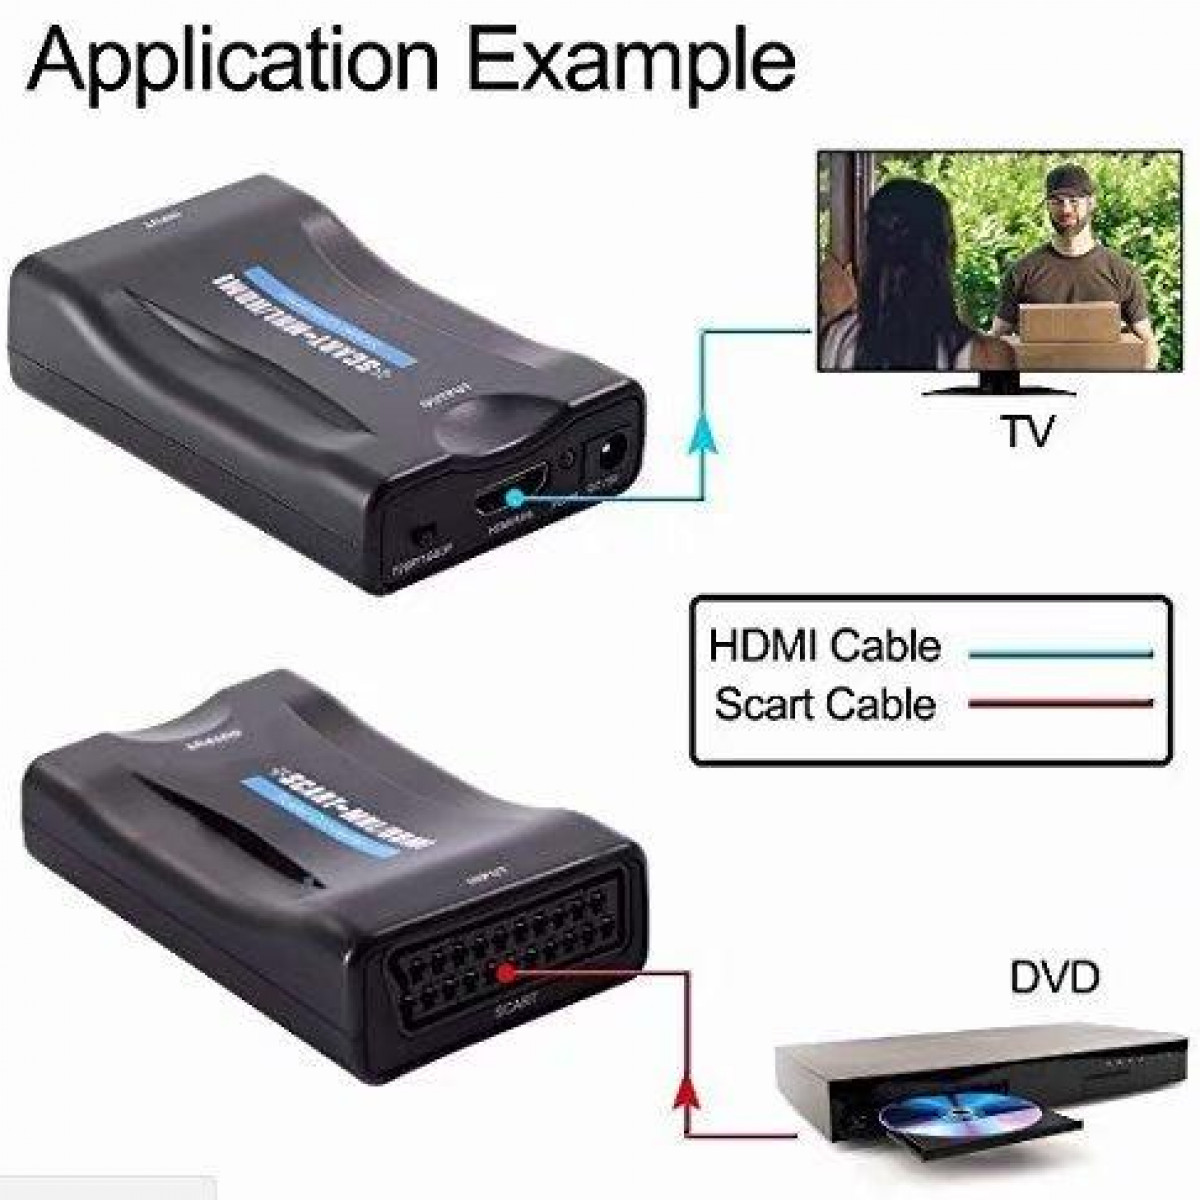 Scart Konverter HDMI HDMI-Scart zu INF